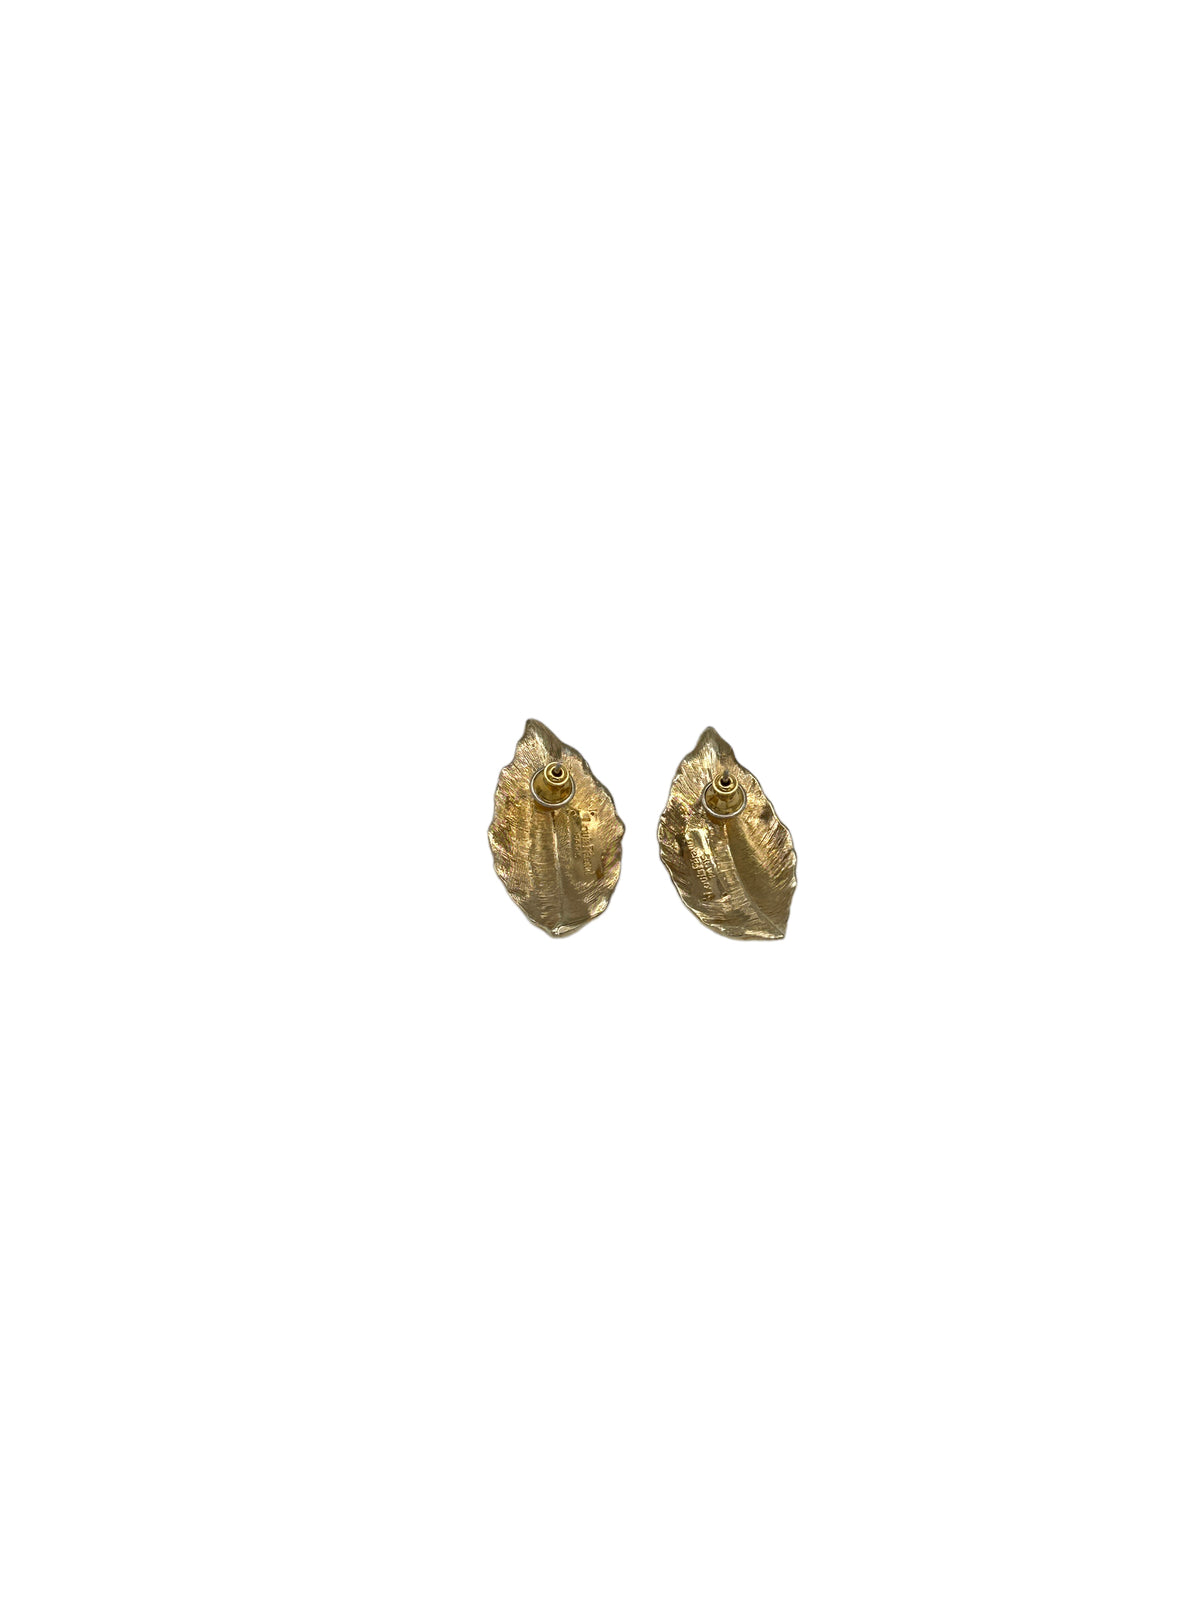 Louis Feraud Paris Shiny Gold Leaf Pierced Earrings 